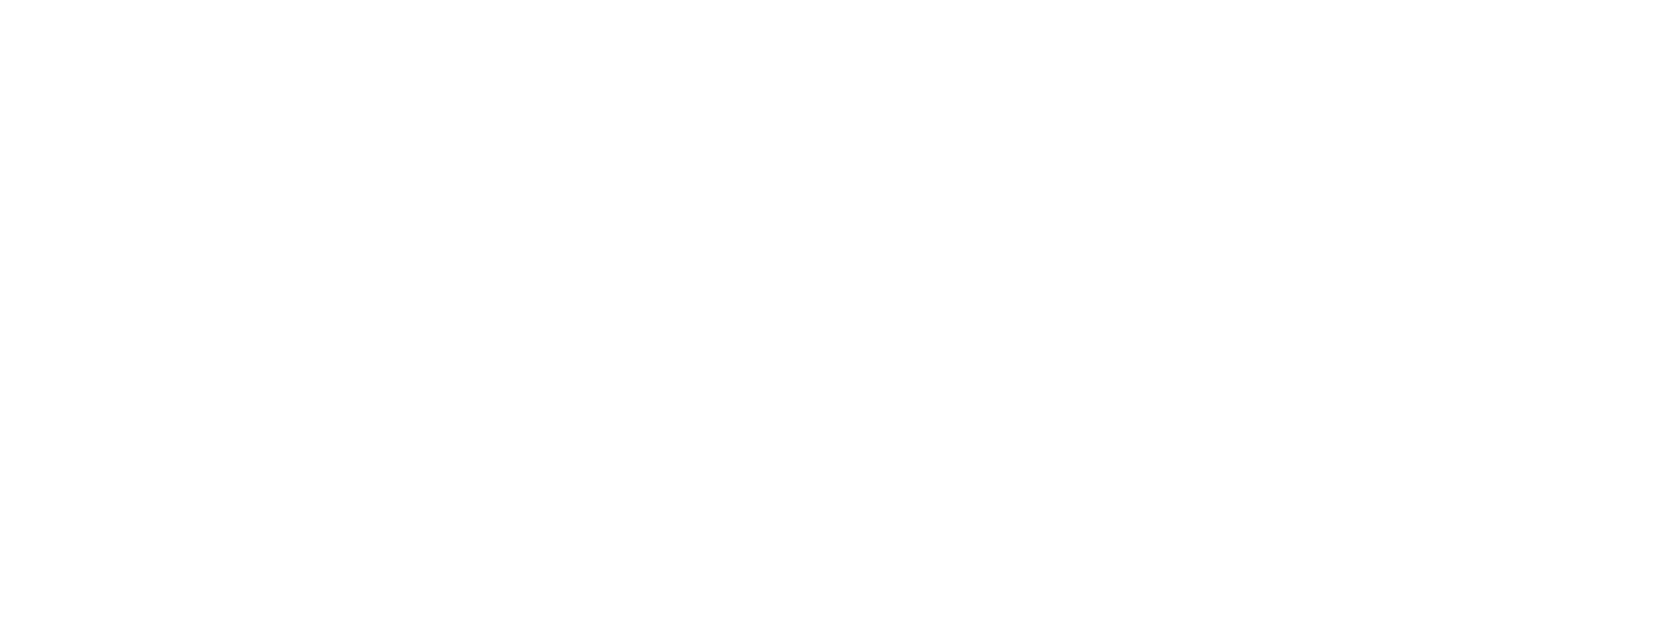 Главный экран сайта турфирмы